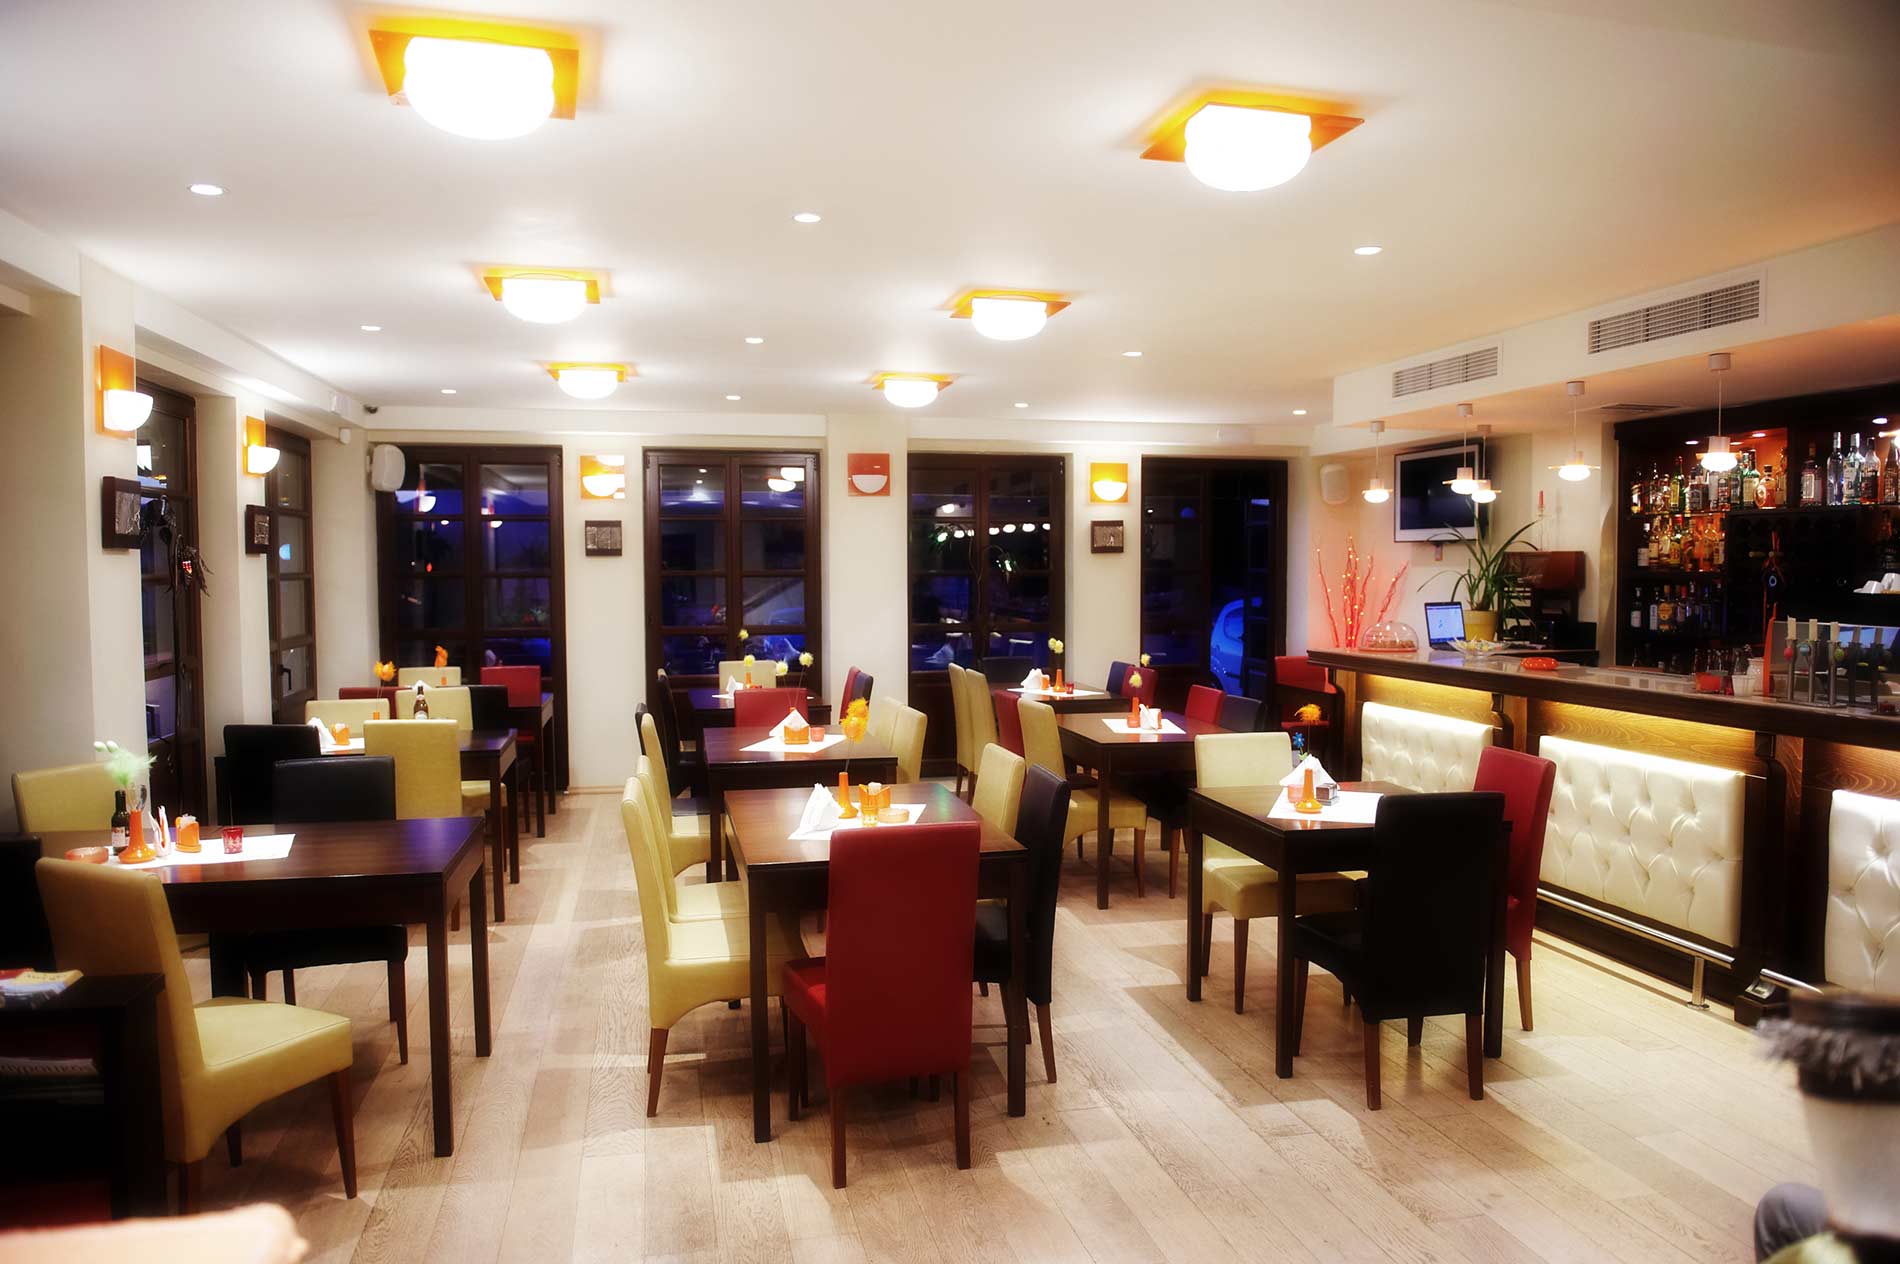 Eστιατόριο Μπαχάρι, Βλαχέρνα Άρτας, Με φιλικό και μοντέρνο, άνετο και κομψό περιβάλλον